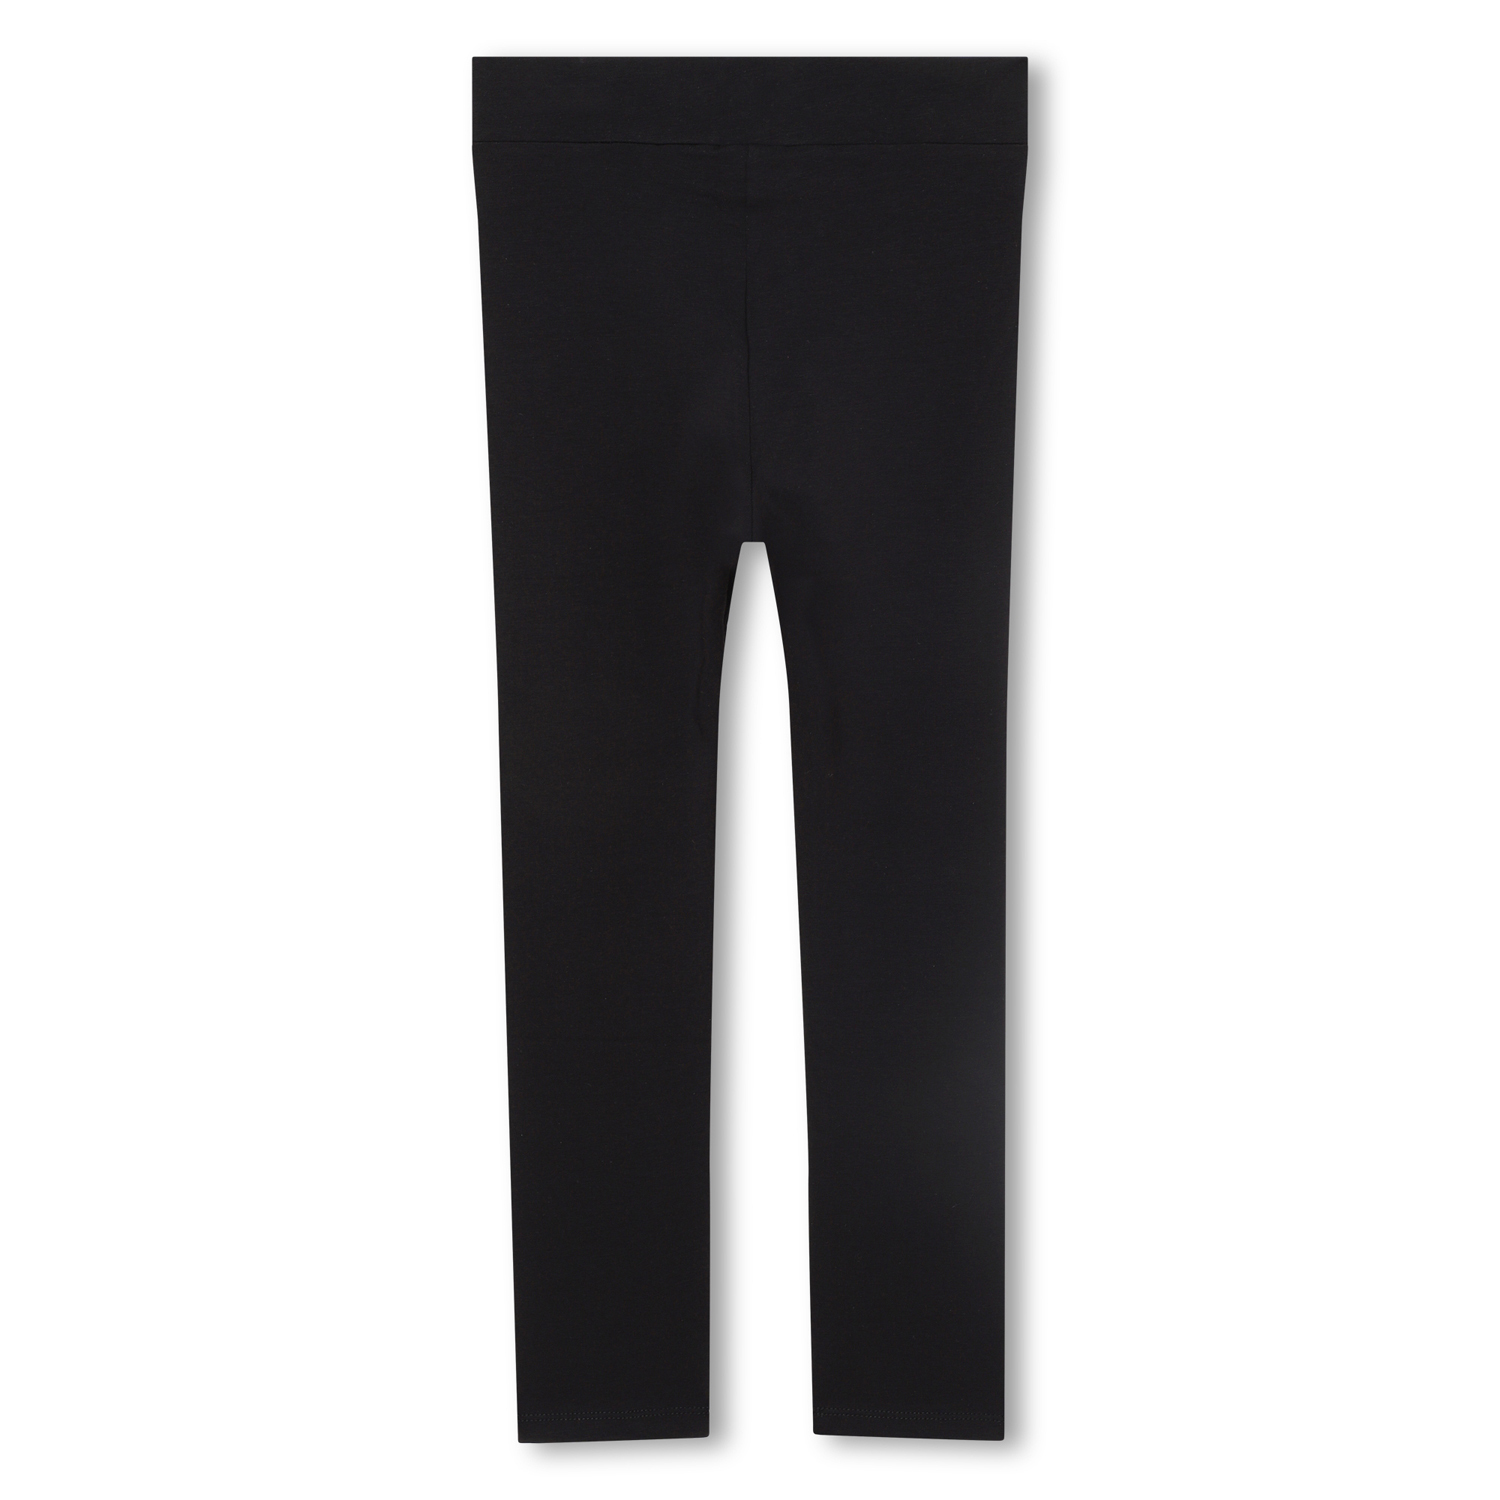 Michael Kors Girls R14161 09B Leggings Black - Kids Clothing Online